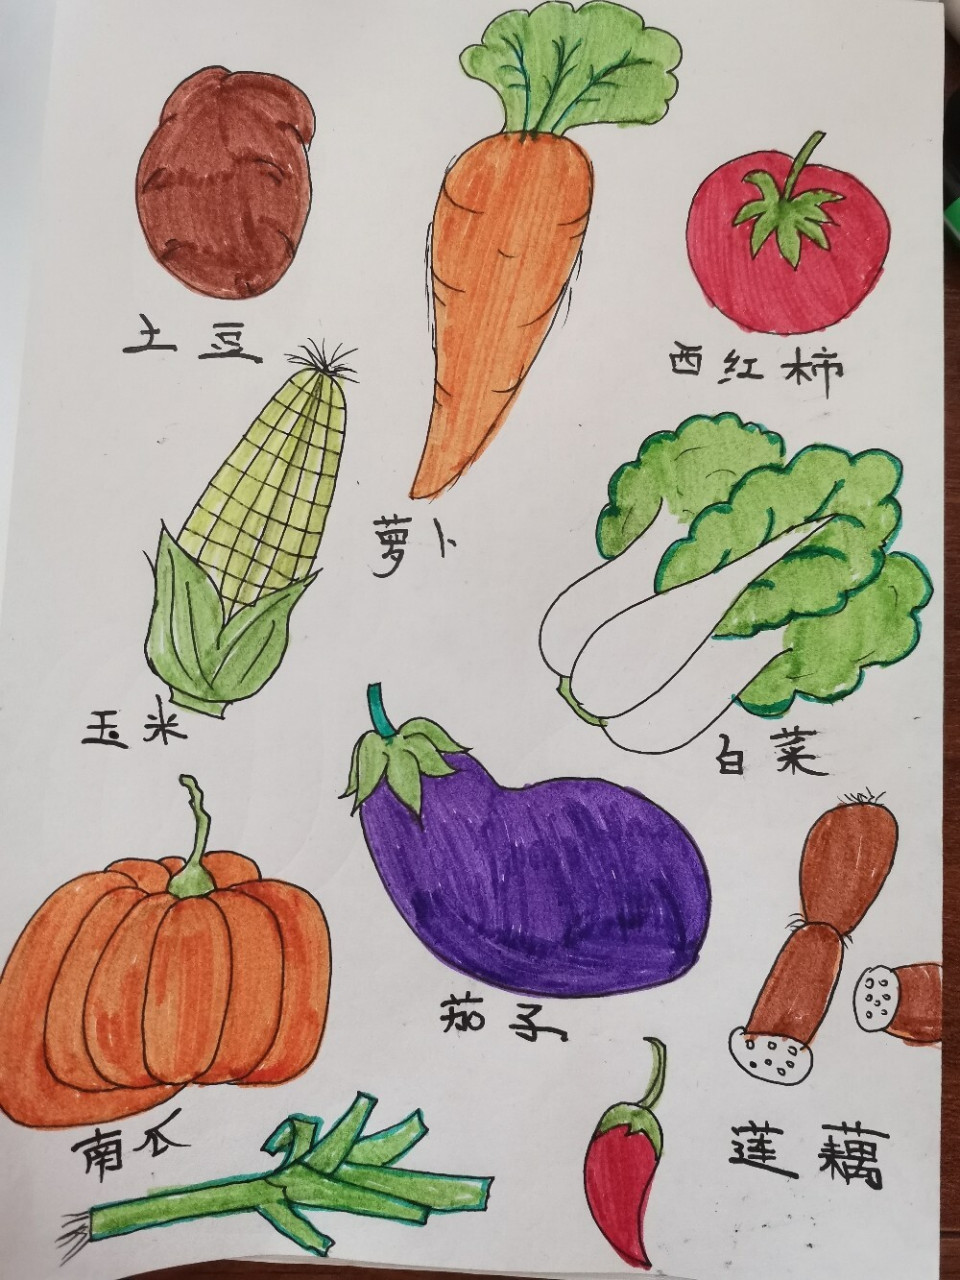 水彩手绘,蔬菜简笔画 萝卜青菜,各有所爱(73°з°)